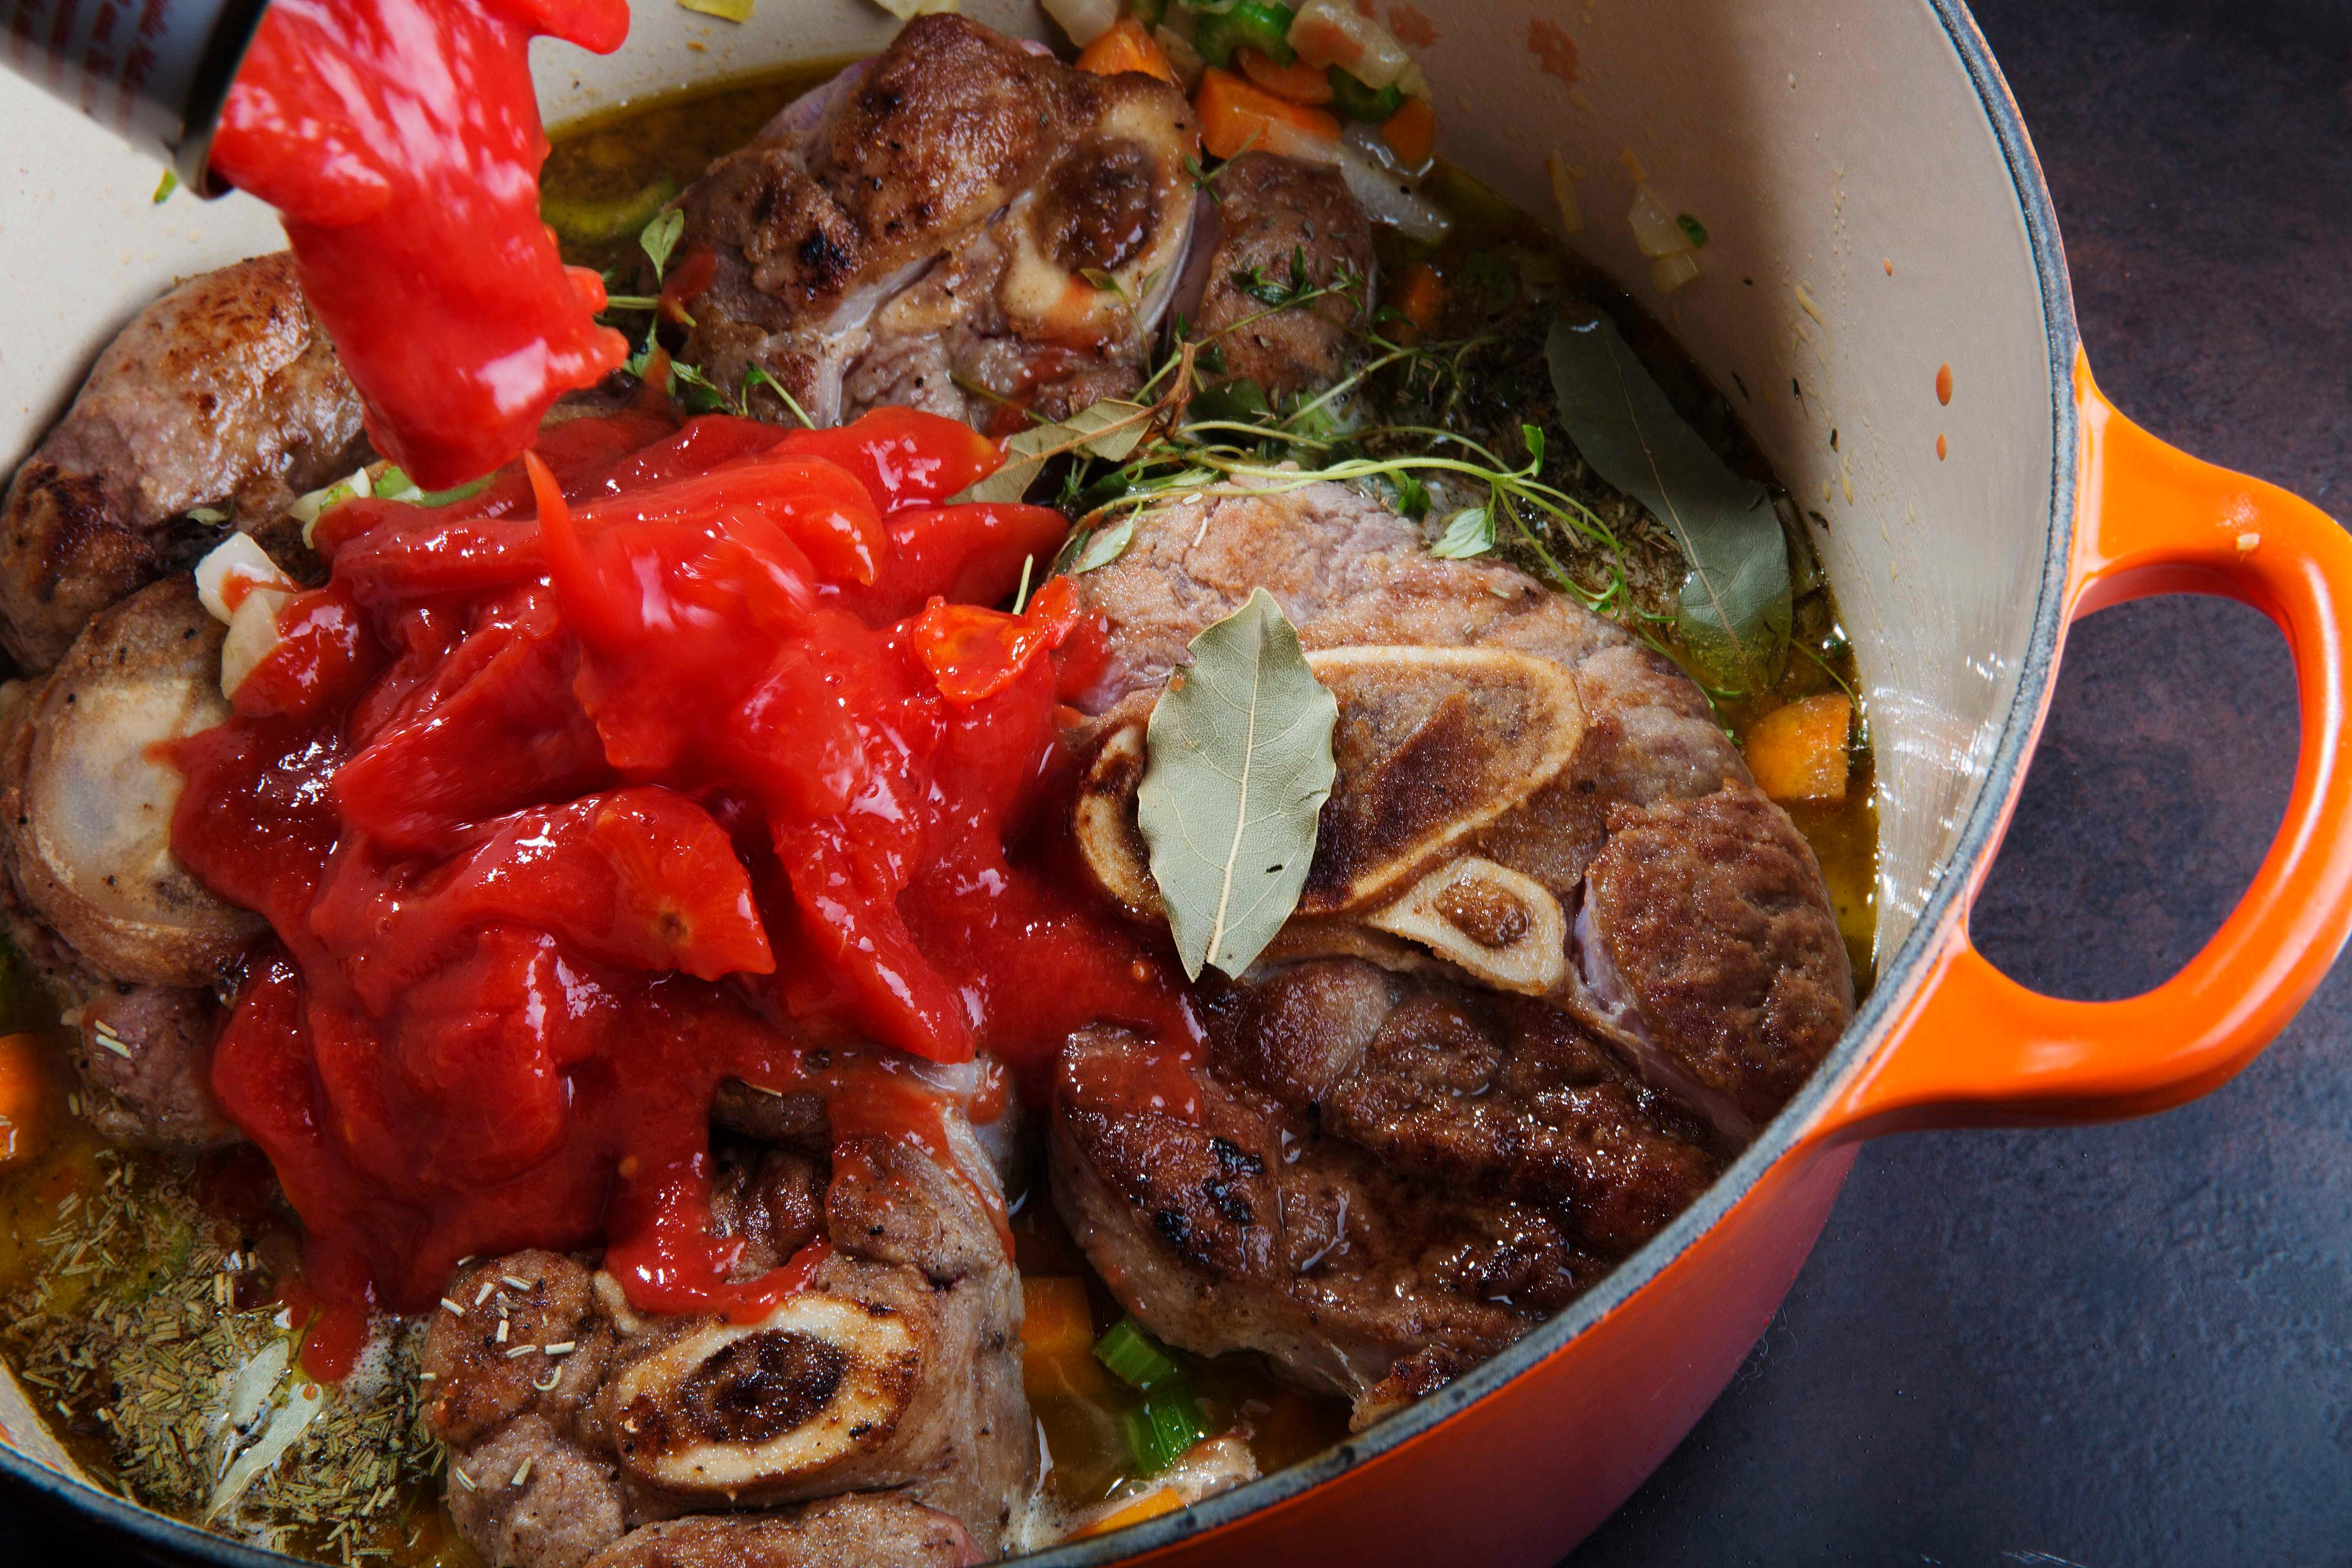 Legg i kalveskankene og tøm over hermetiske tomater. Kok opp og la kjøttet syde under lokk på svak varme et par timer til kjøttet er mørt.